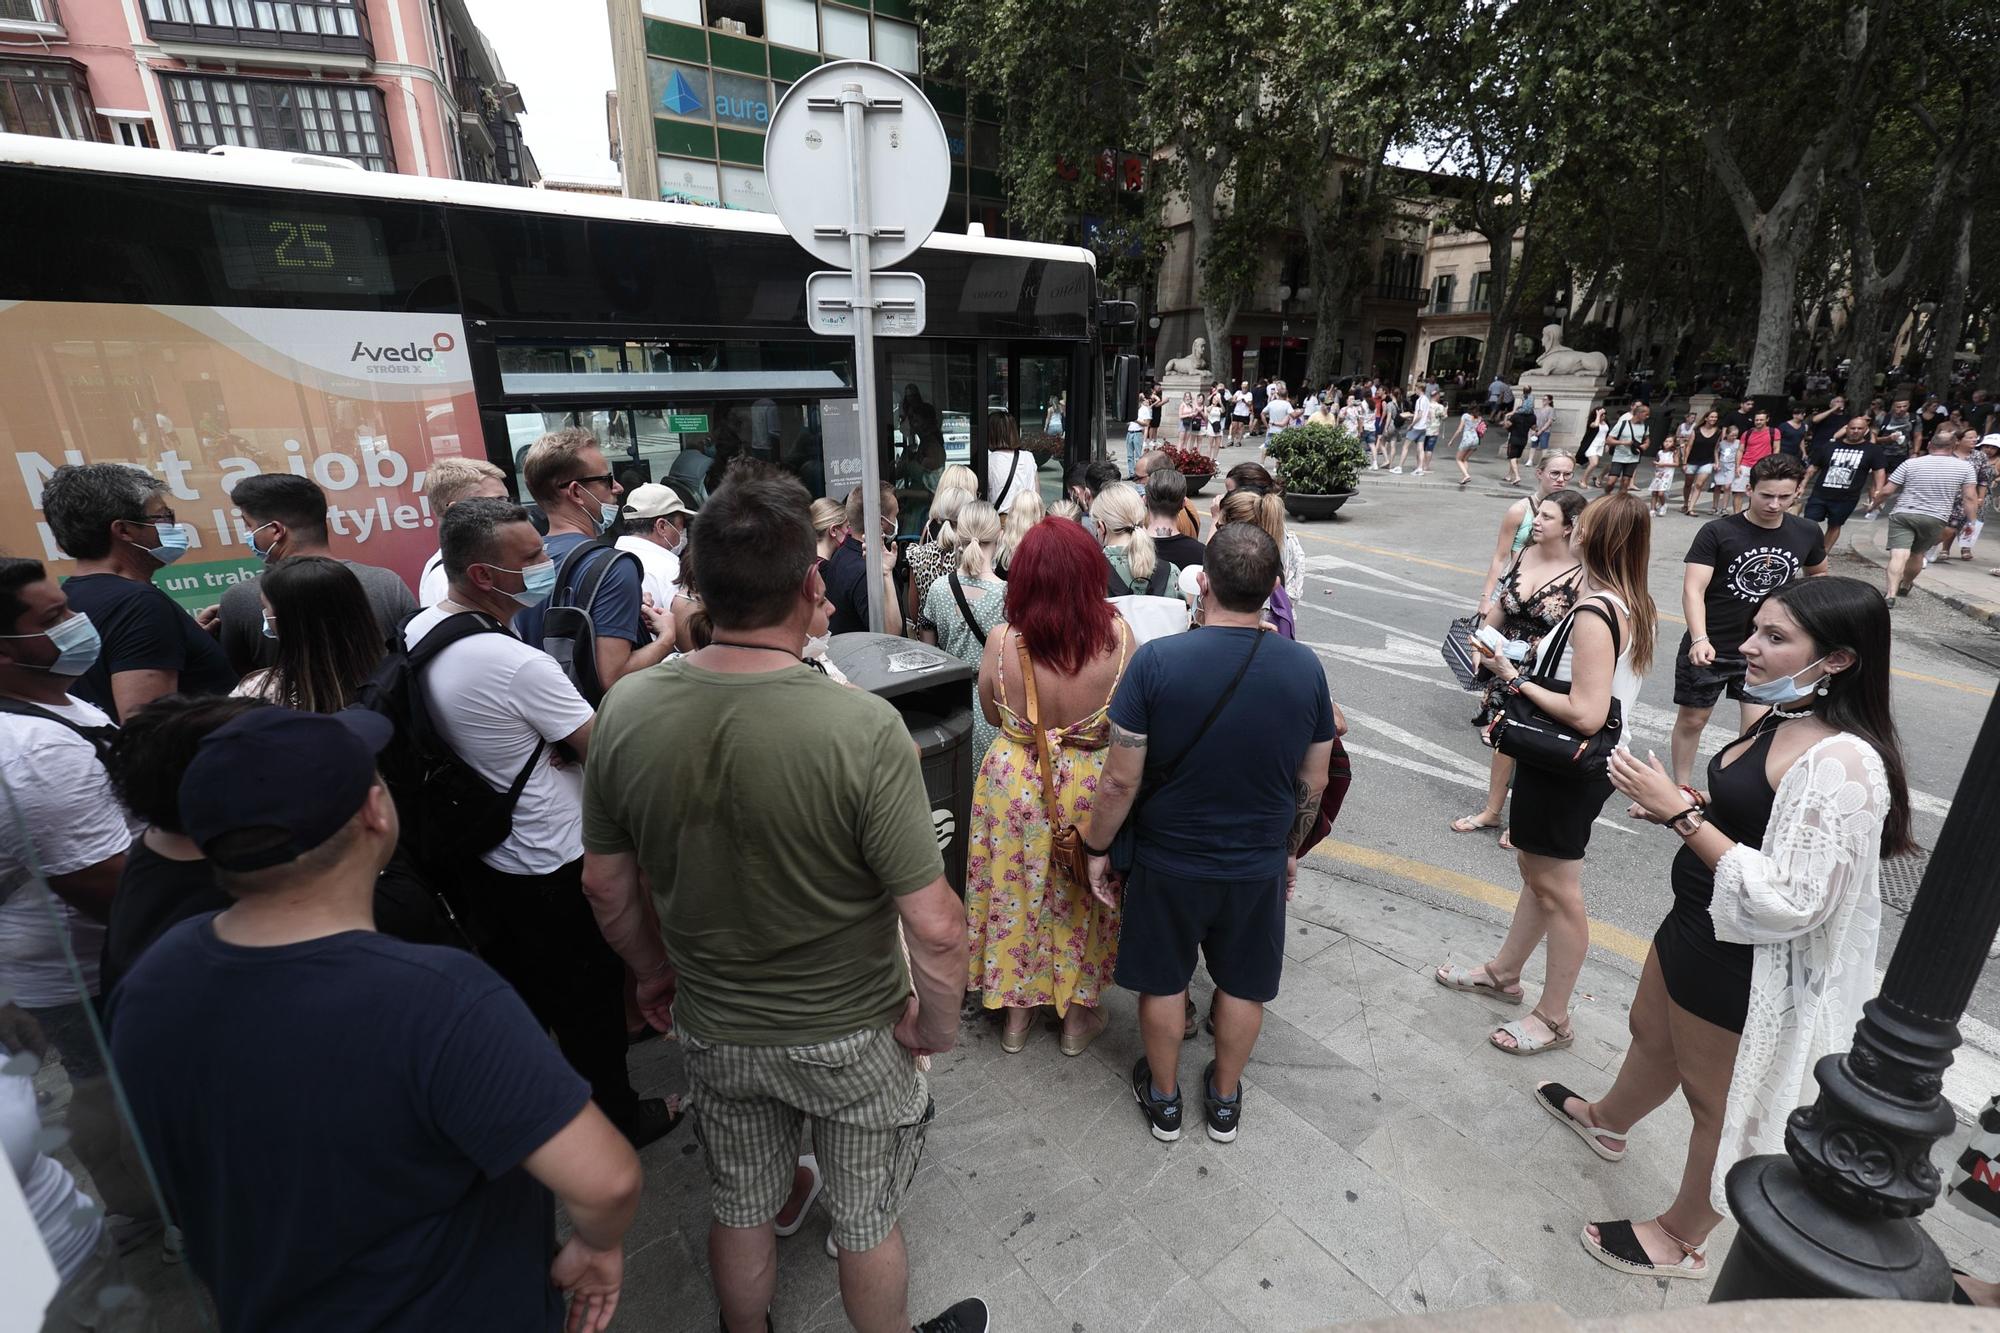 Las mejores fotos del colapso de turistas en el centro de Palma